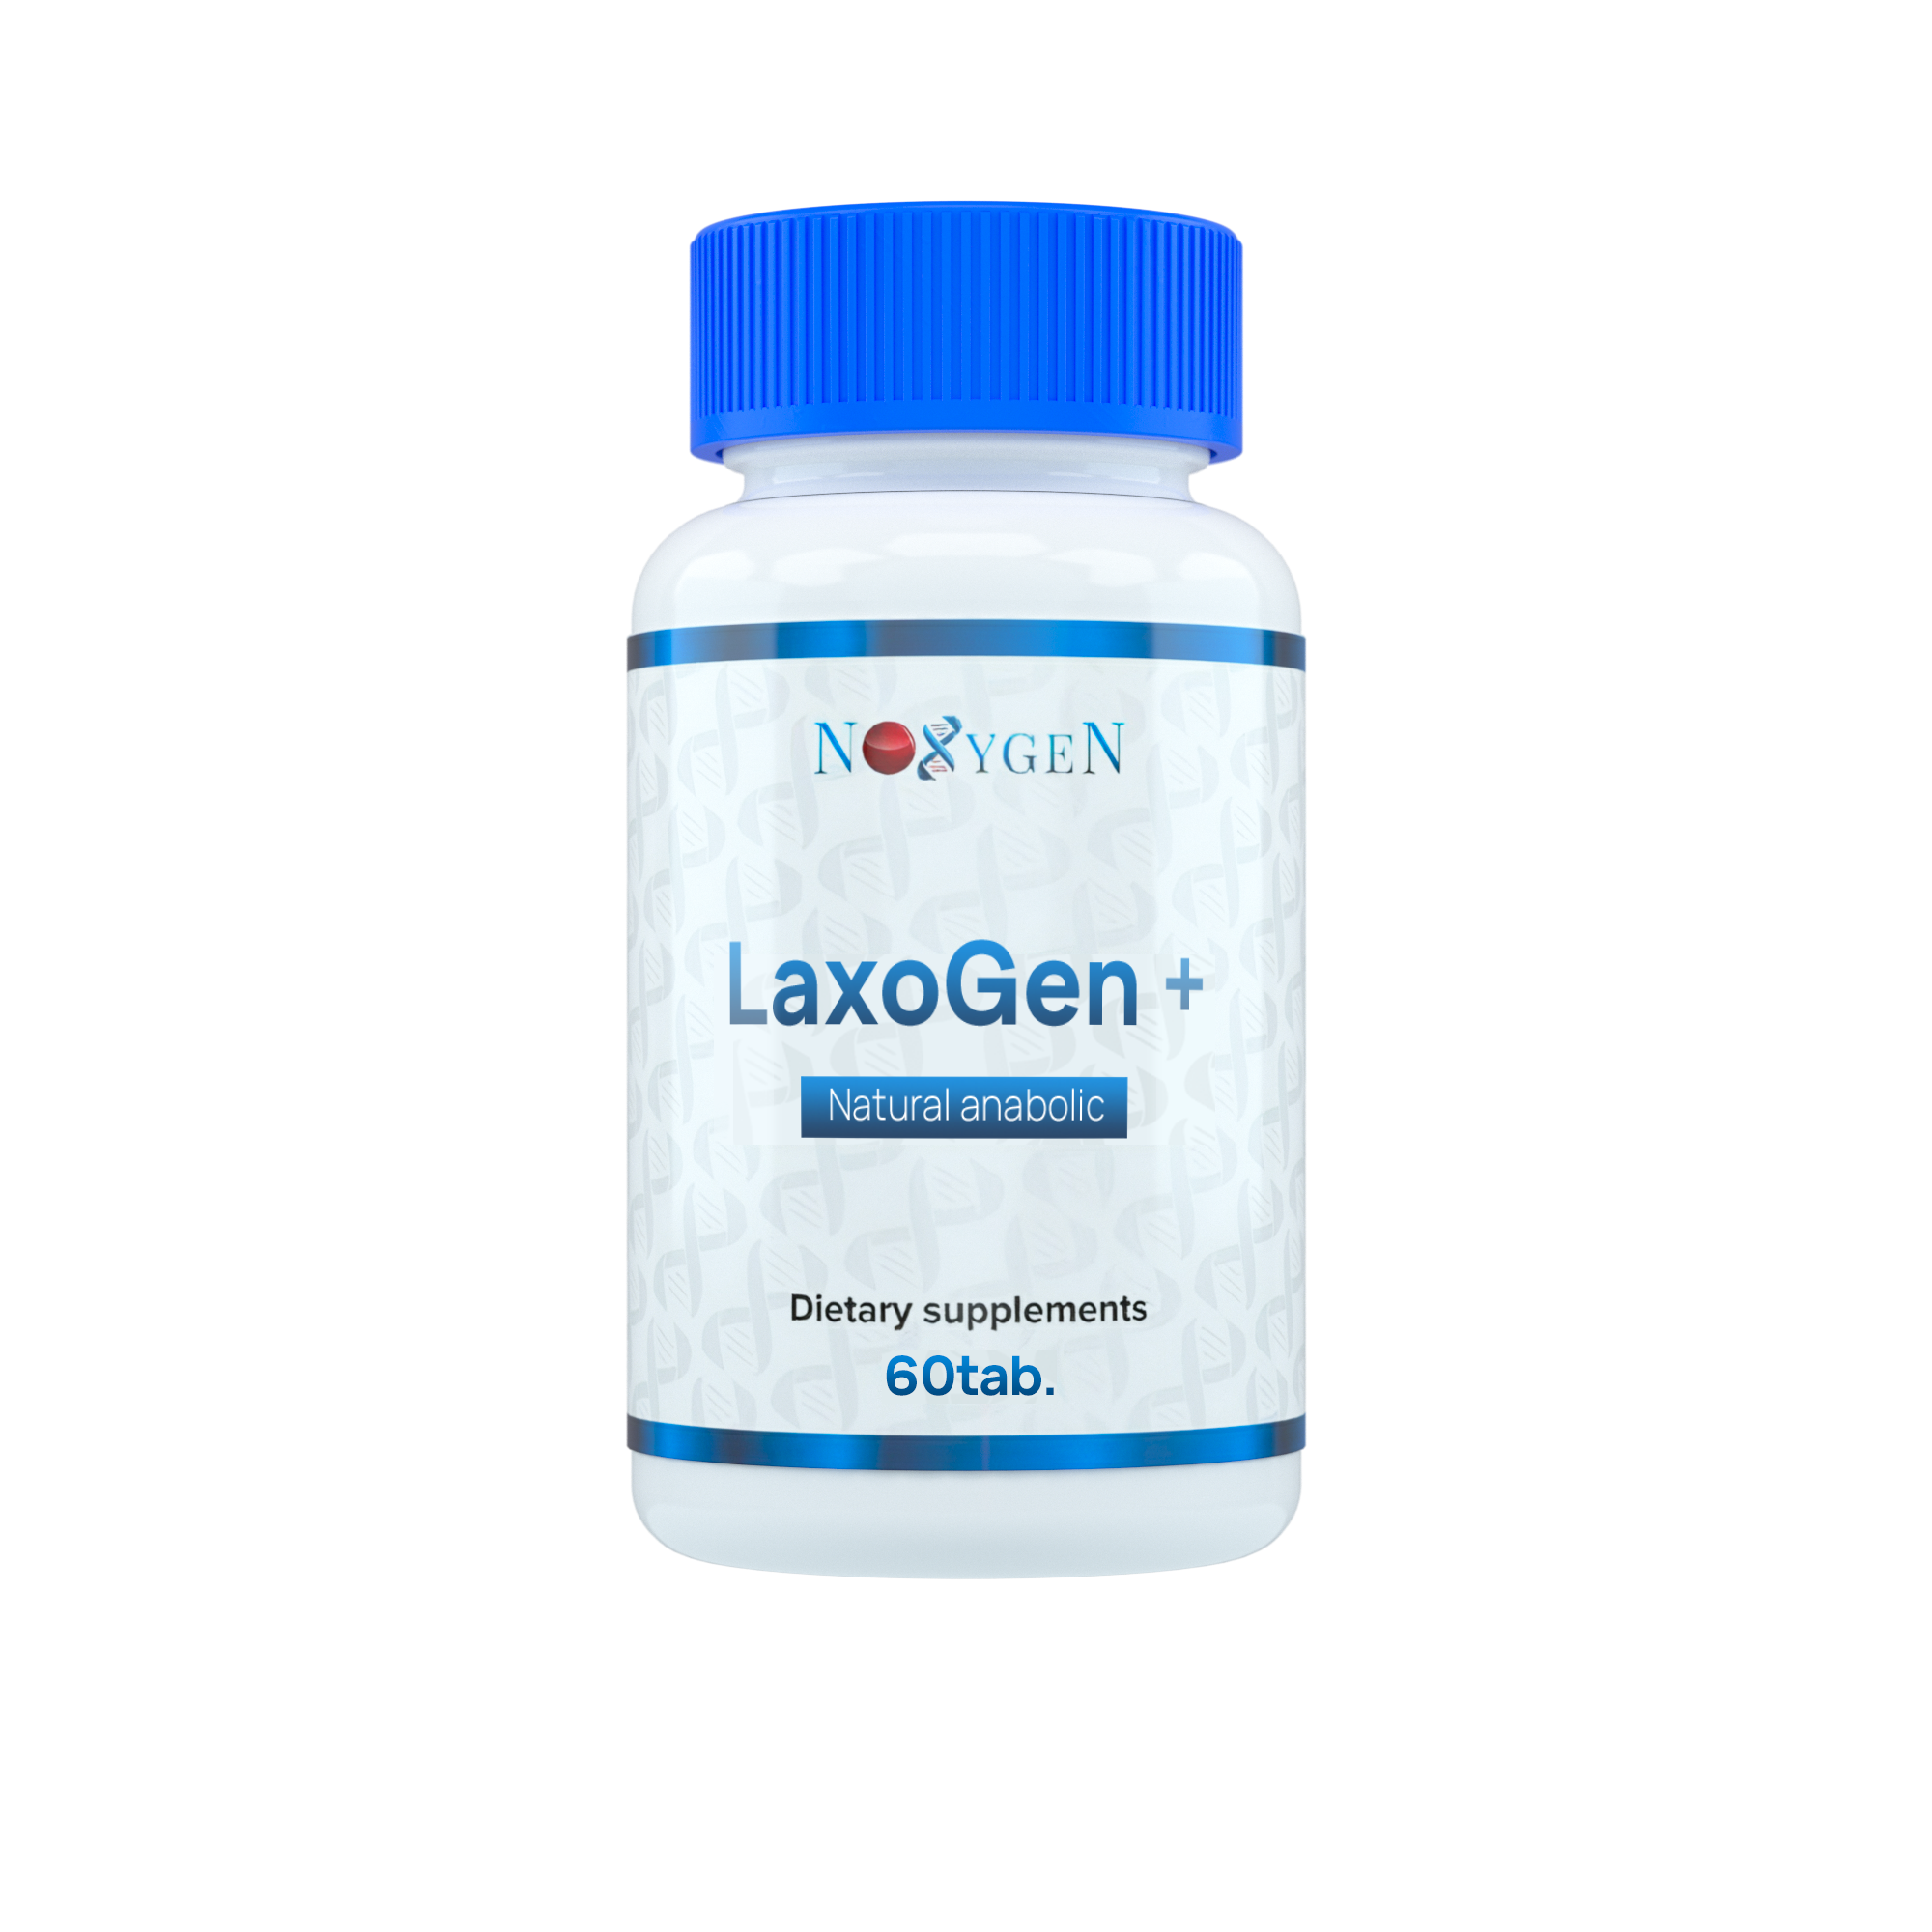 Noxygen LaxoGen+ 60таб. для наращивания мышечной массы и жиросжигания